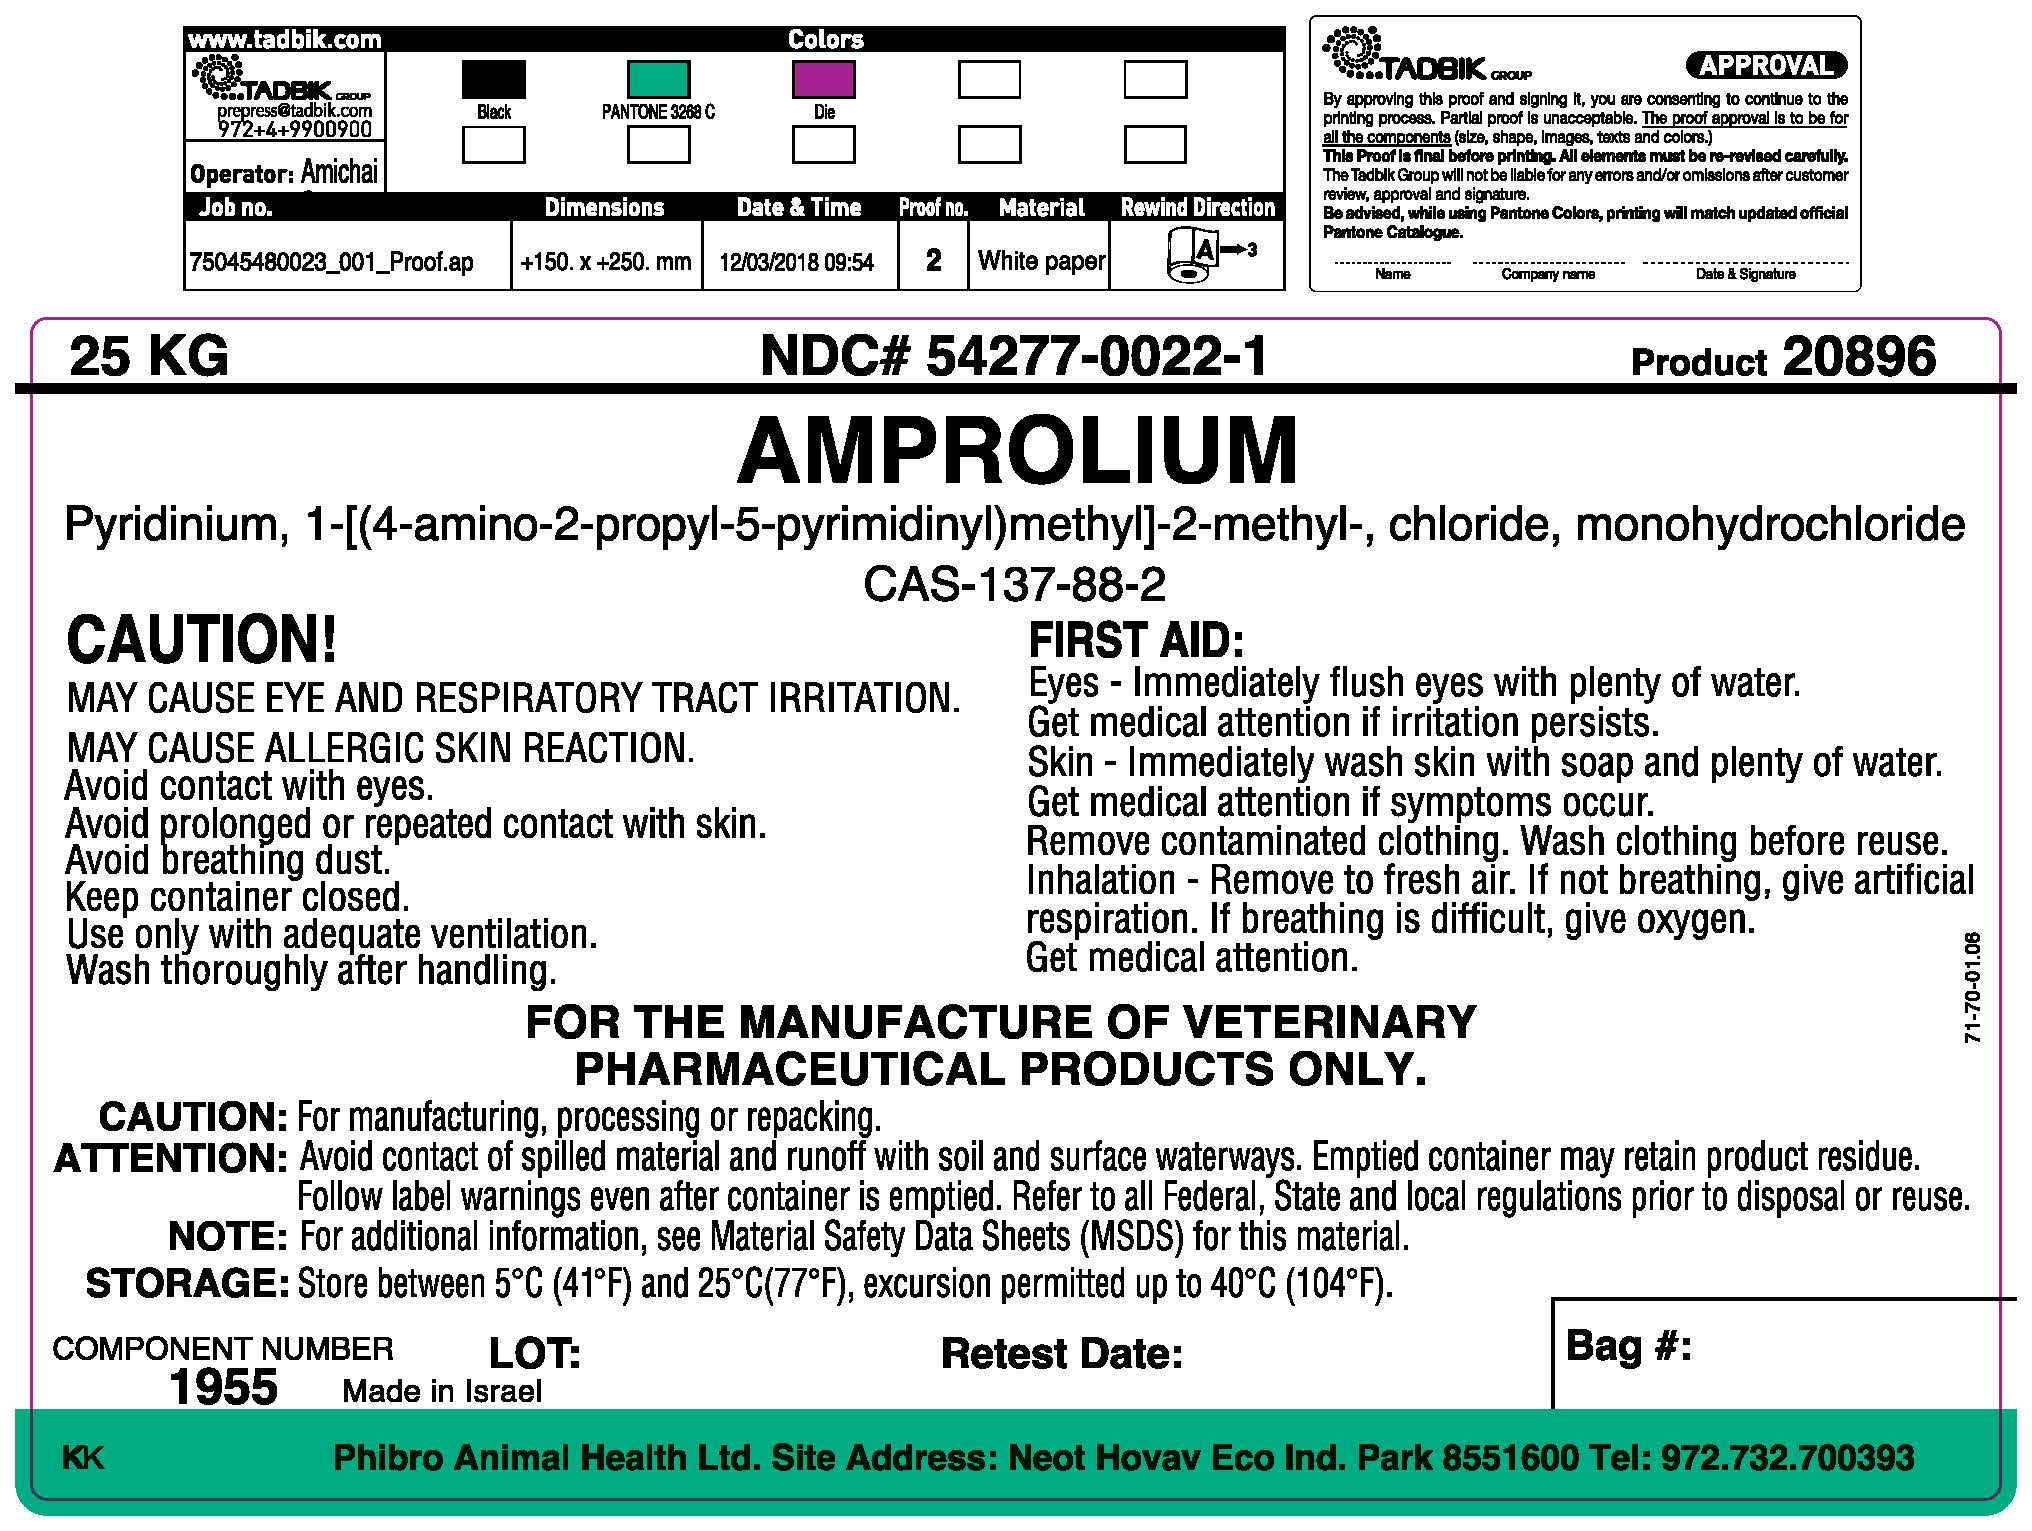 image description - Amprolium